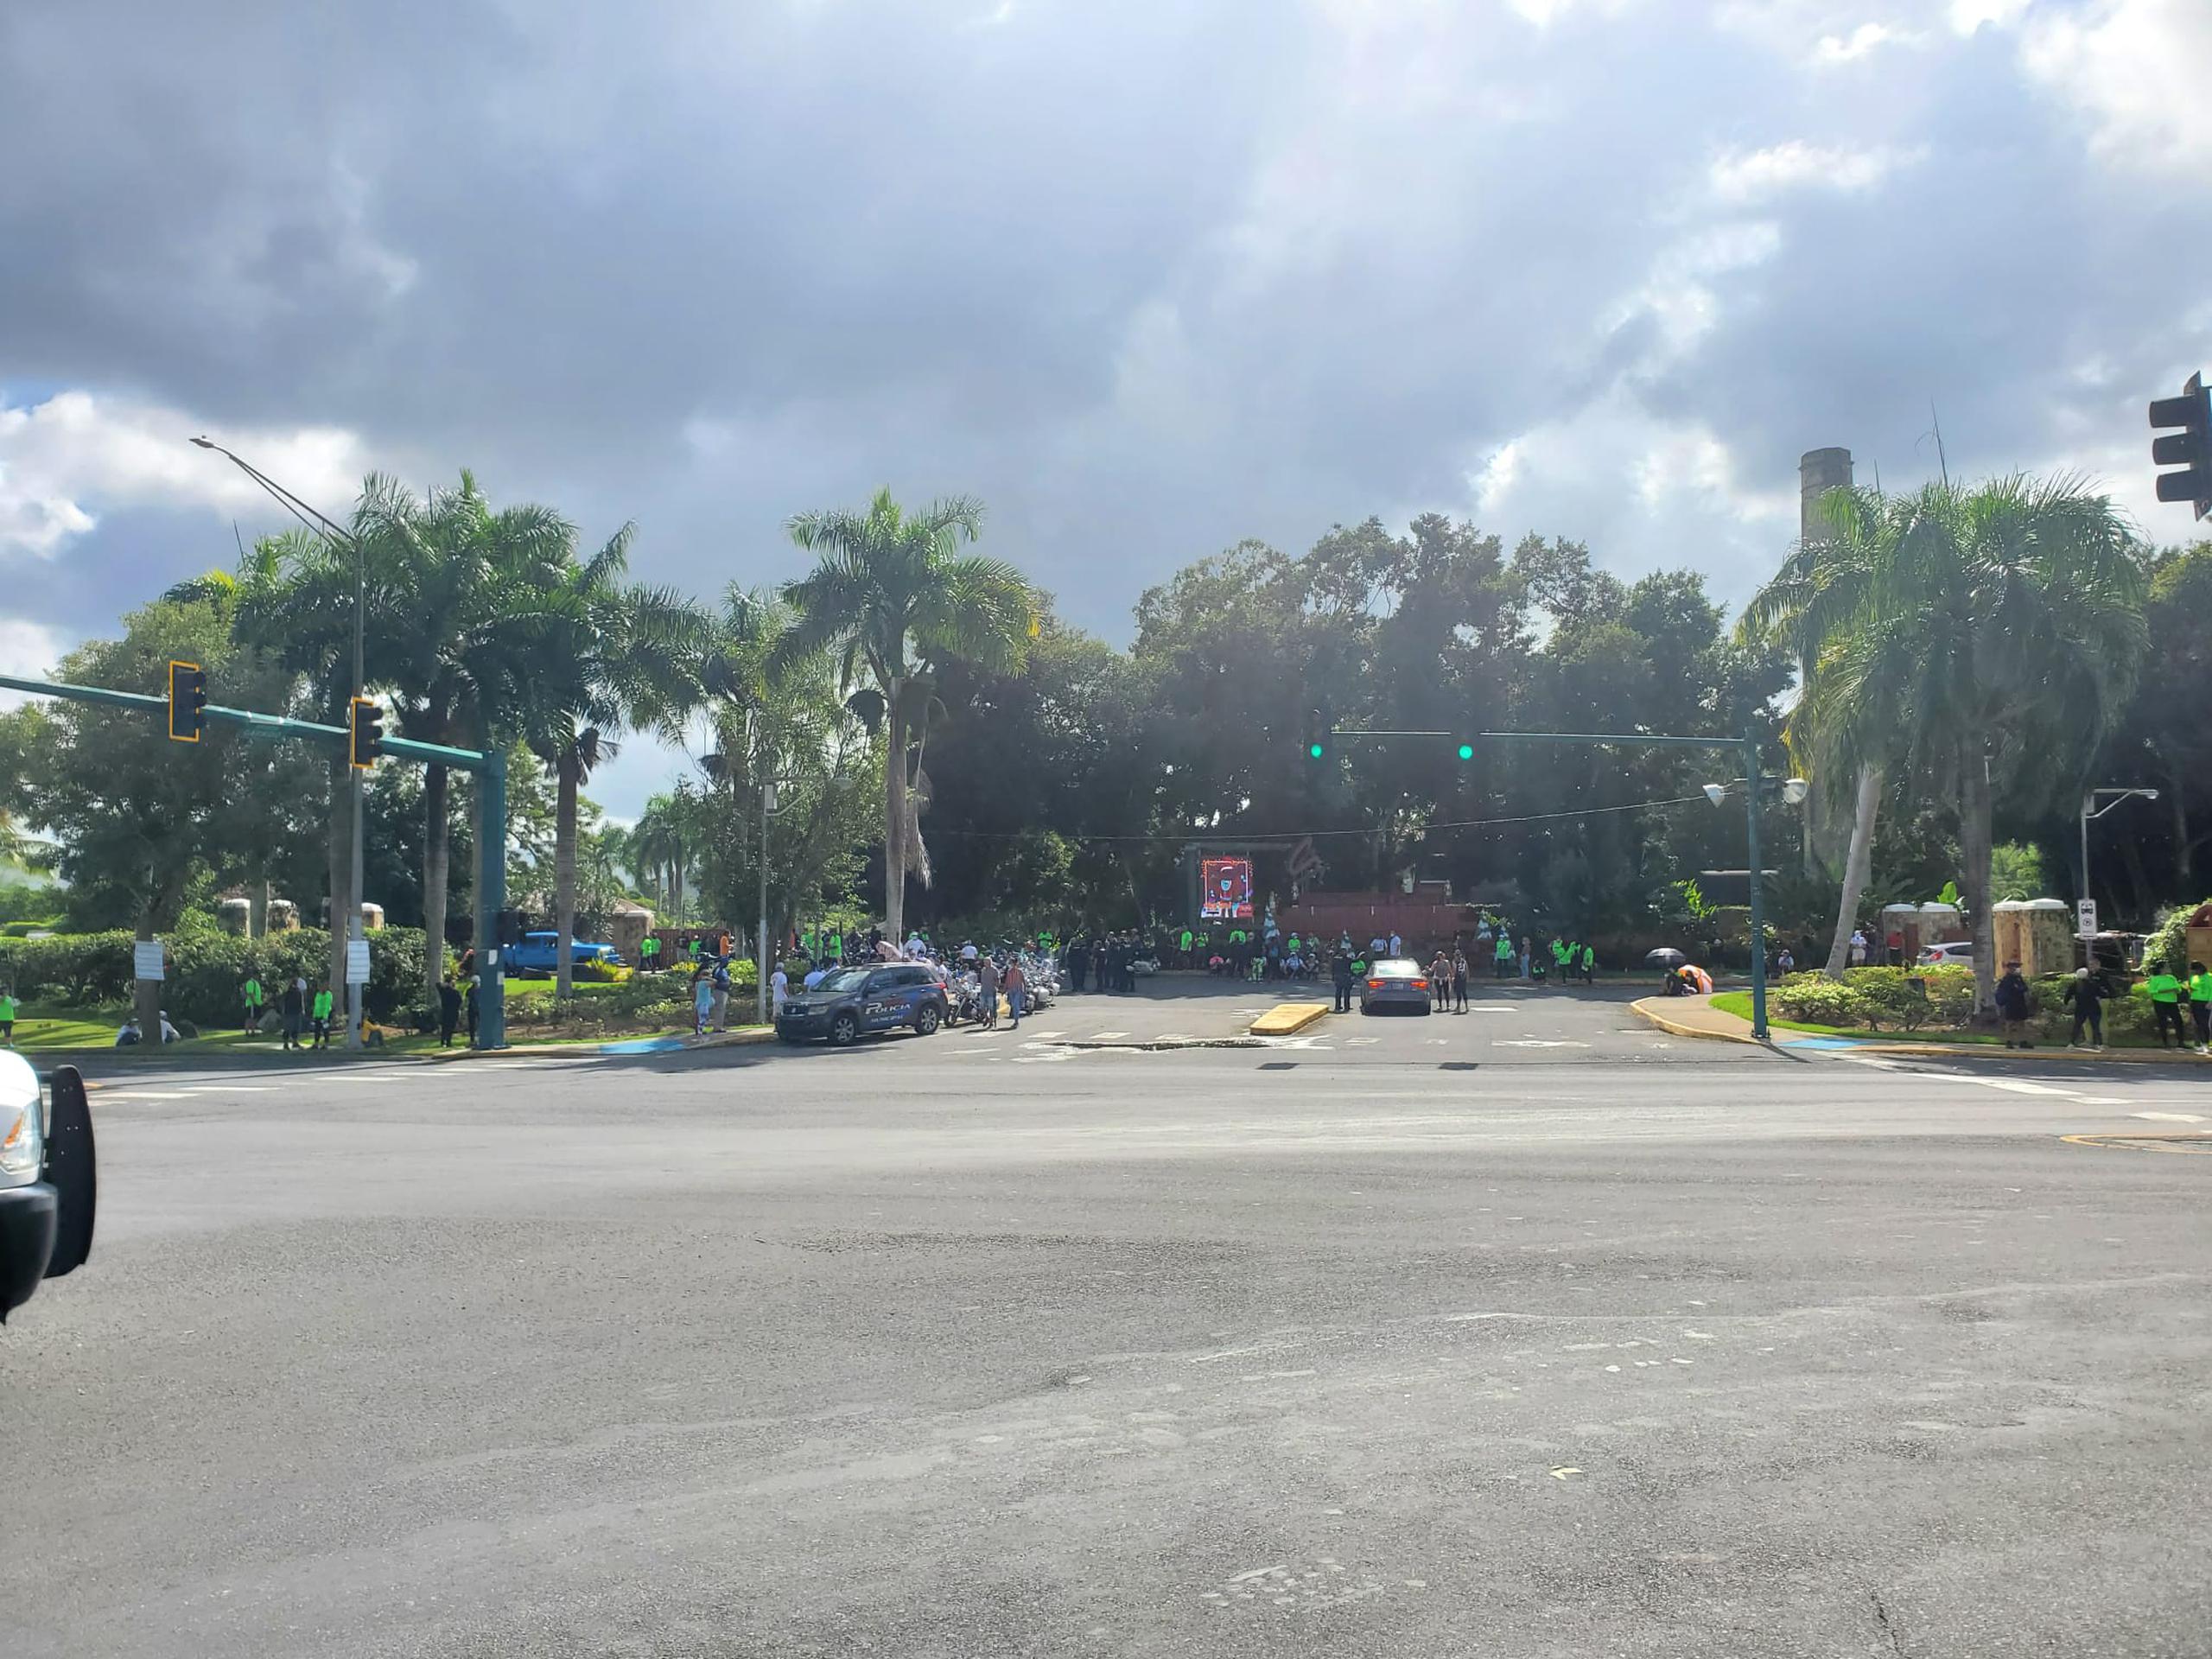 Este lunes 13 de diciembre Raymond Arrieta inicia la edición 13 de la caminata Da Vida desde el jardín Botánico de Caguas hasta el Paseo de las Artes. Voluntarios y el público que lo acompañará se reúne en el Jardín Botánico.